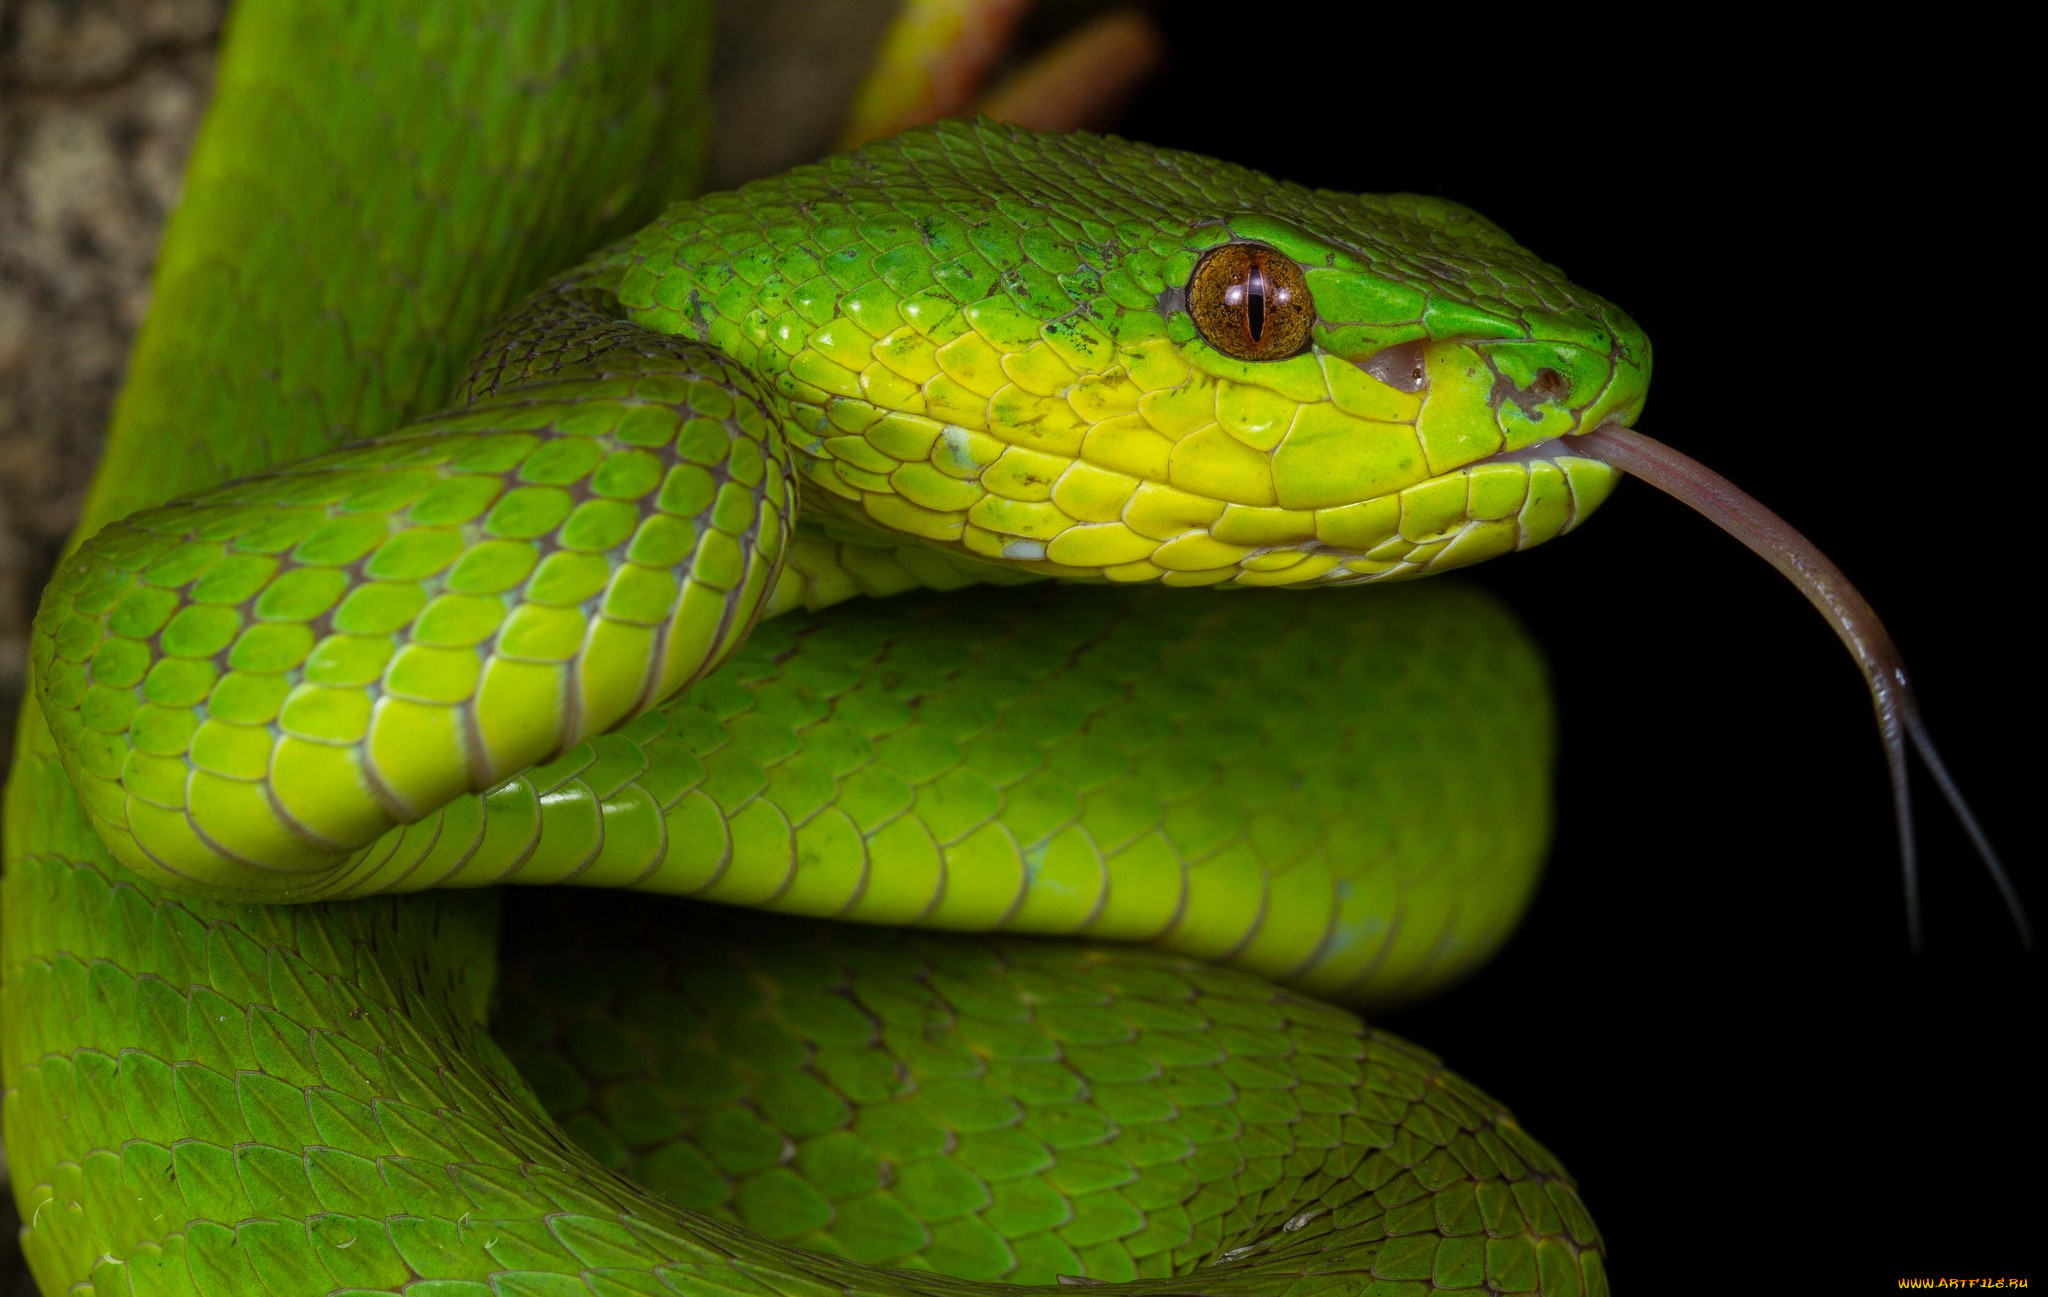 Куфия инсулярис. Trimeresurus insularis. Зеленая змея. Желто зеленая змея.